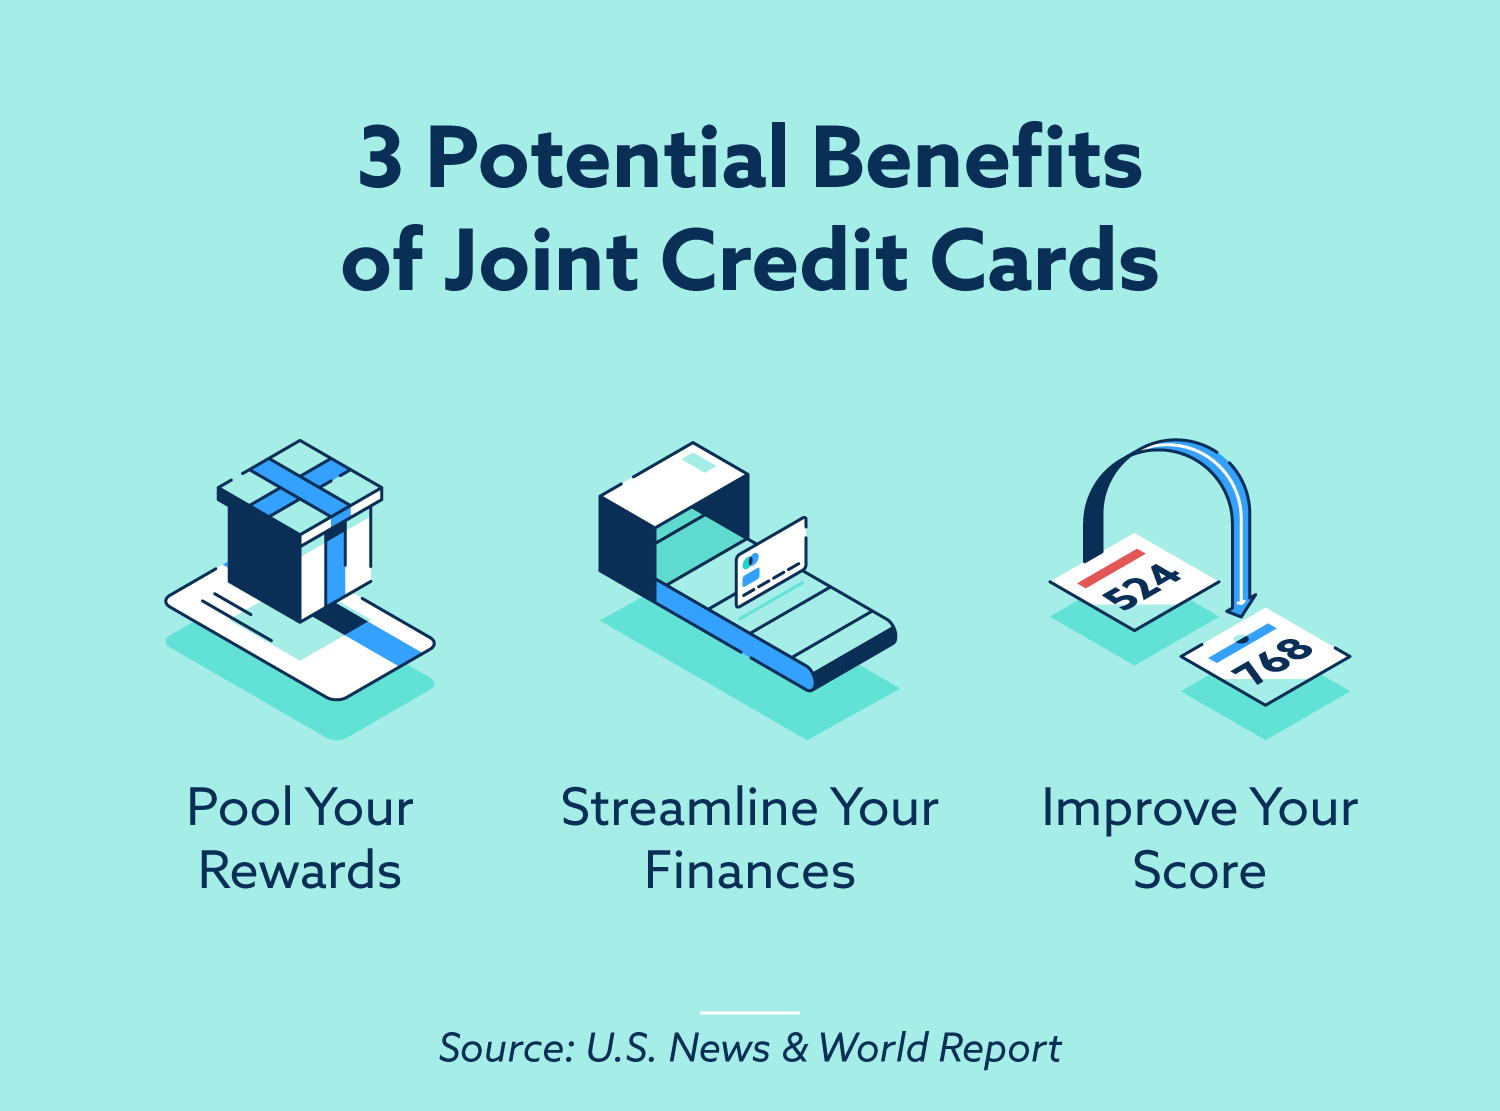 3 beneficios potenciales de las tarjetas de crédito conjuntas: agrupe sus recompensas, agilice sus finanzas, mejore su puntaje.